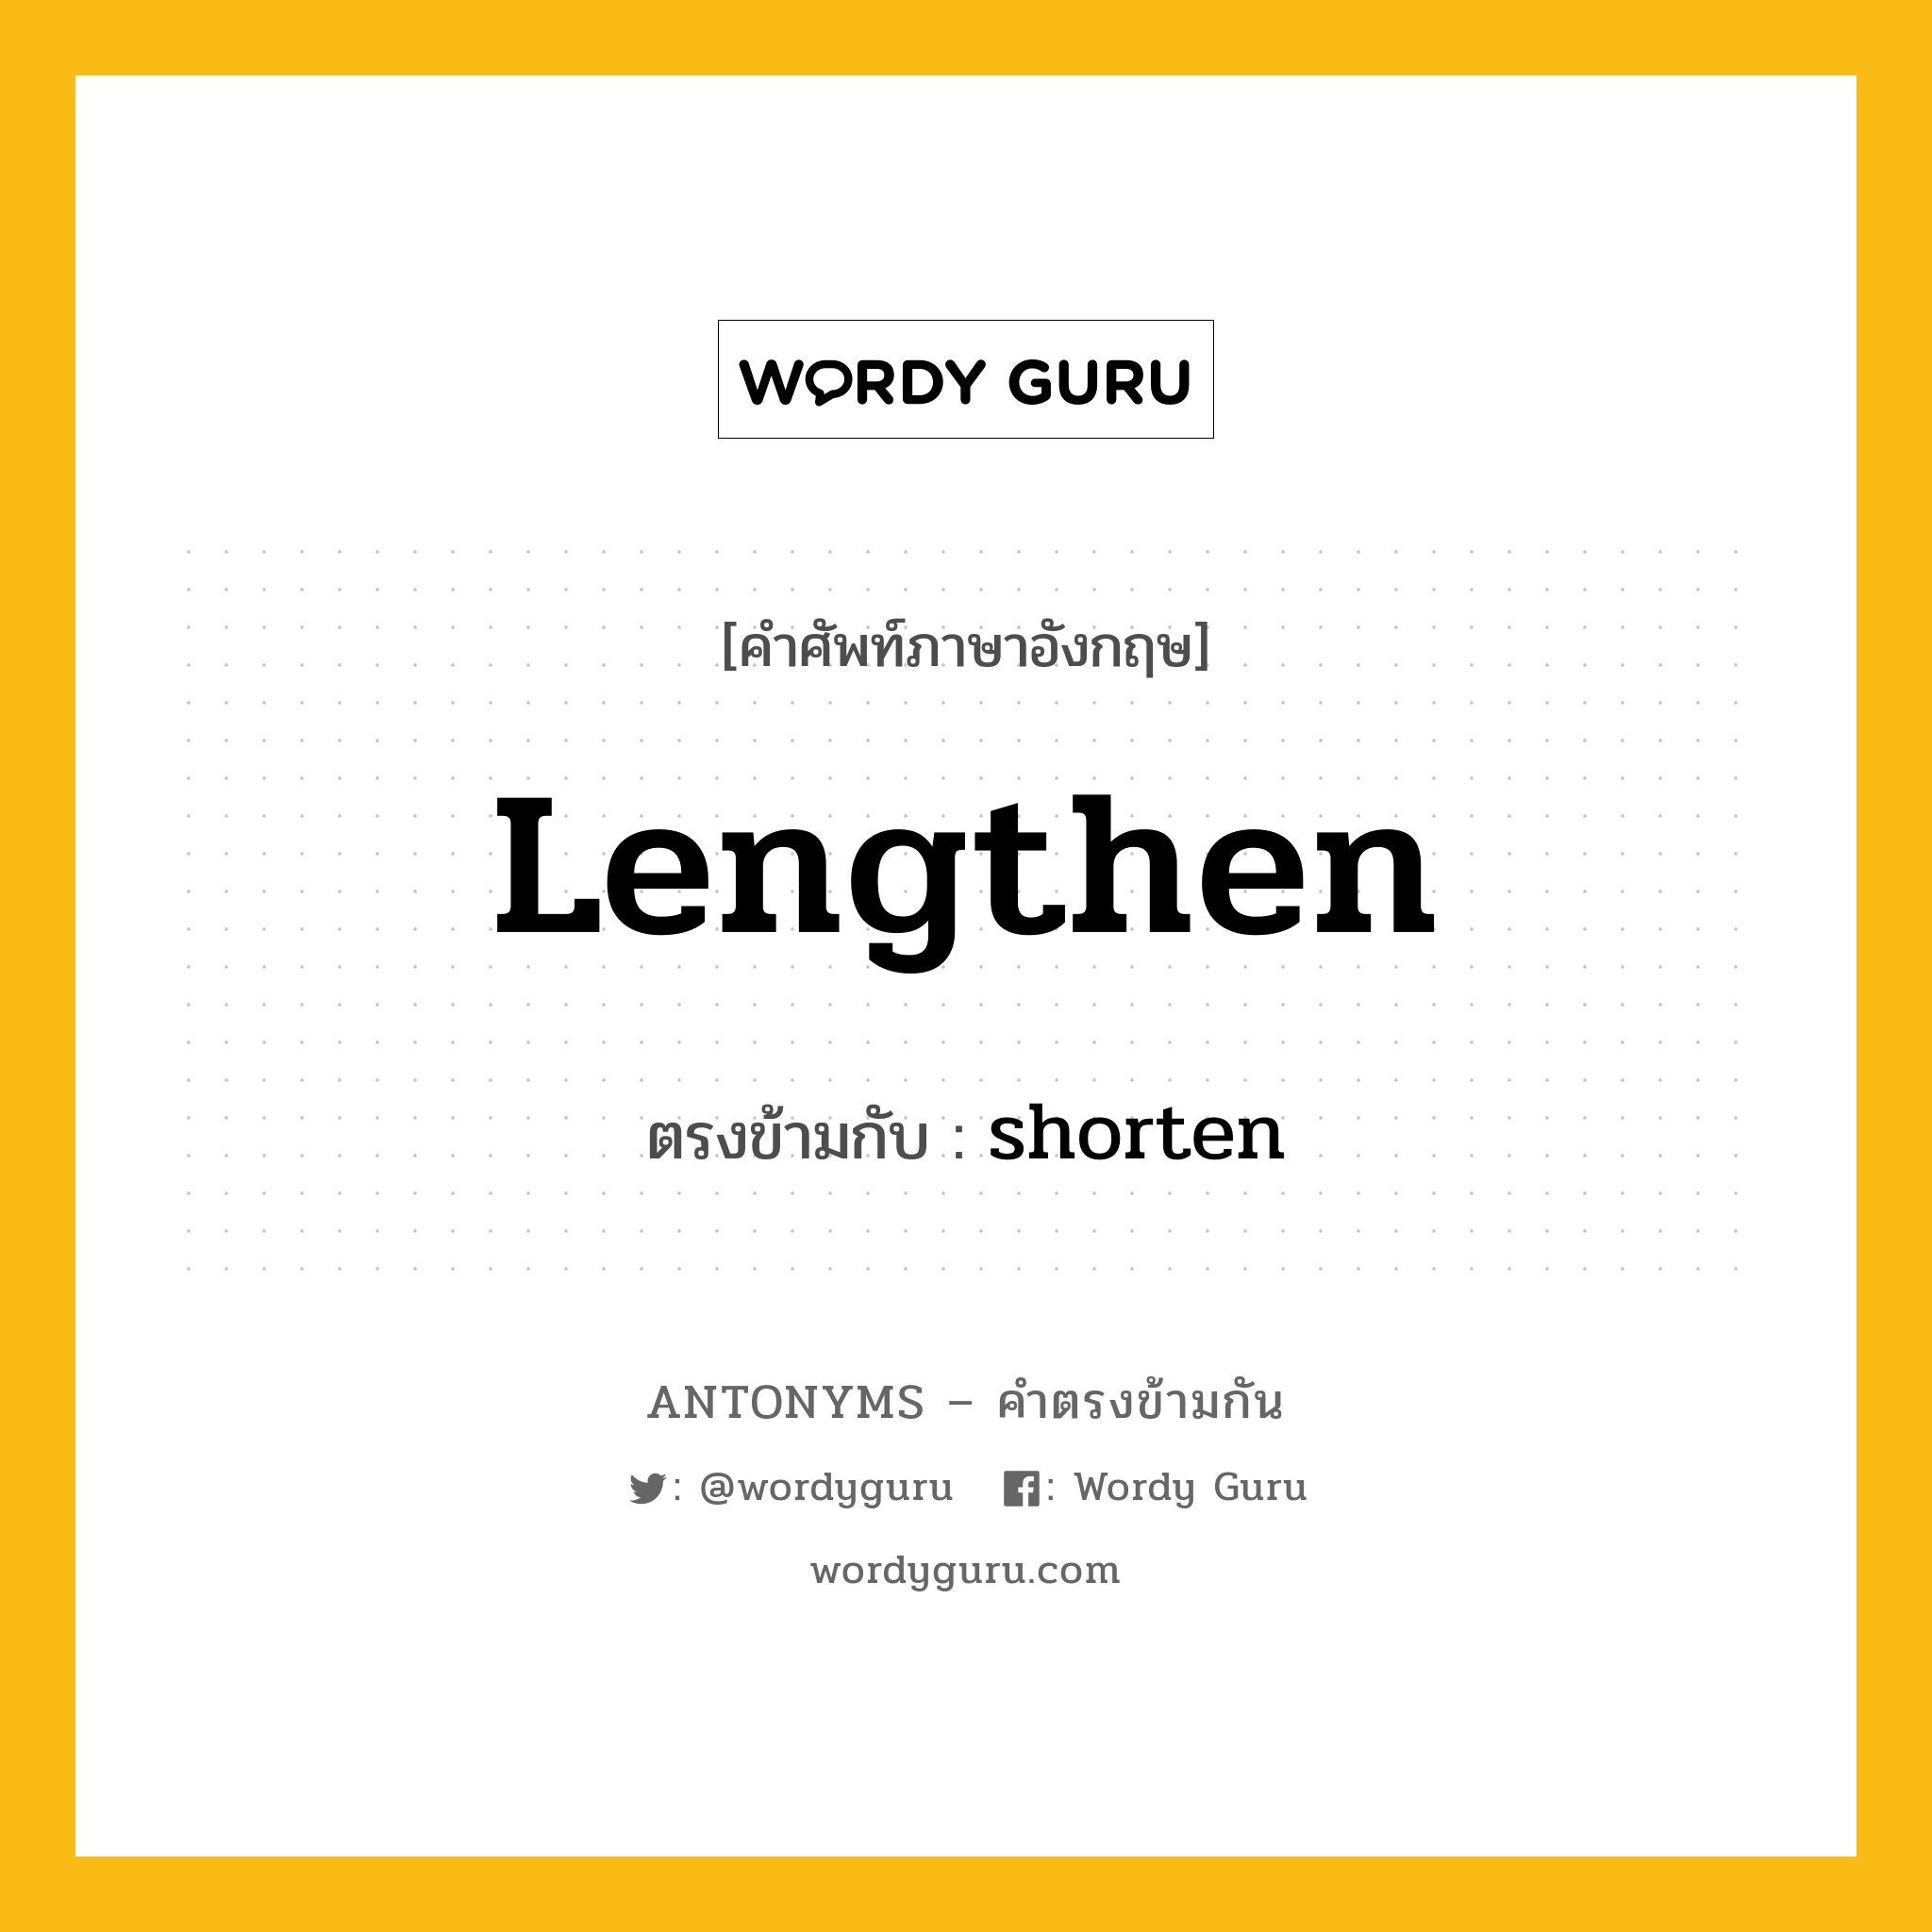 lengthen เป็นคำตรงข้ามกับคำไหนบ้าง?, คำศัพท์ภาษาอังกฤษ lengthen ตรงข้ามกับ shorten หมวด shorten